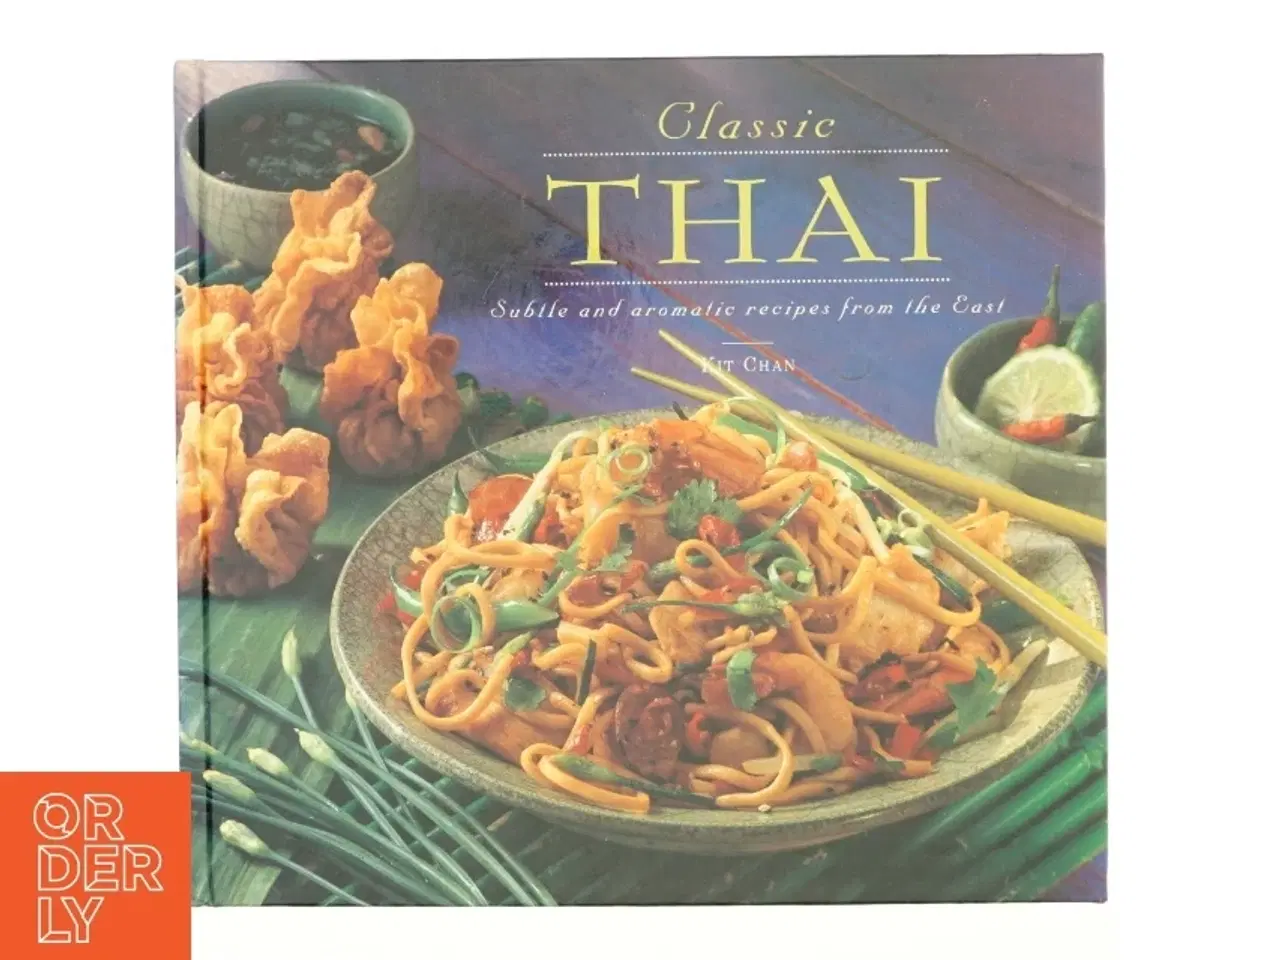 Billede 1 - Classic Thai af Anness Publishing, Kit Chan (Bog)